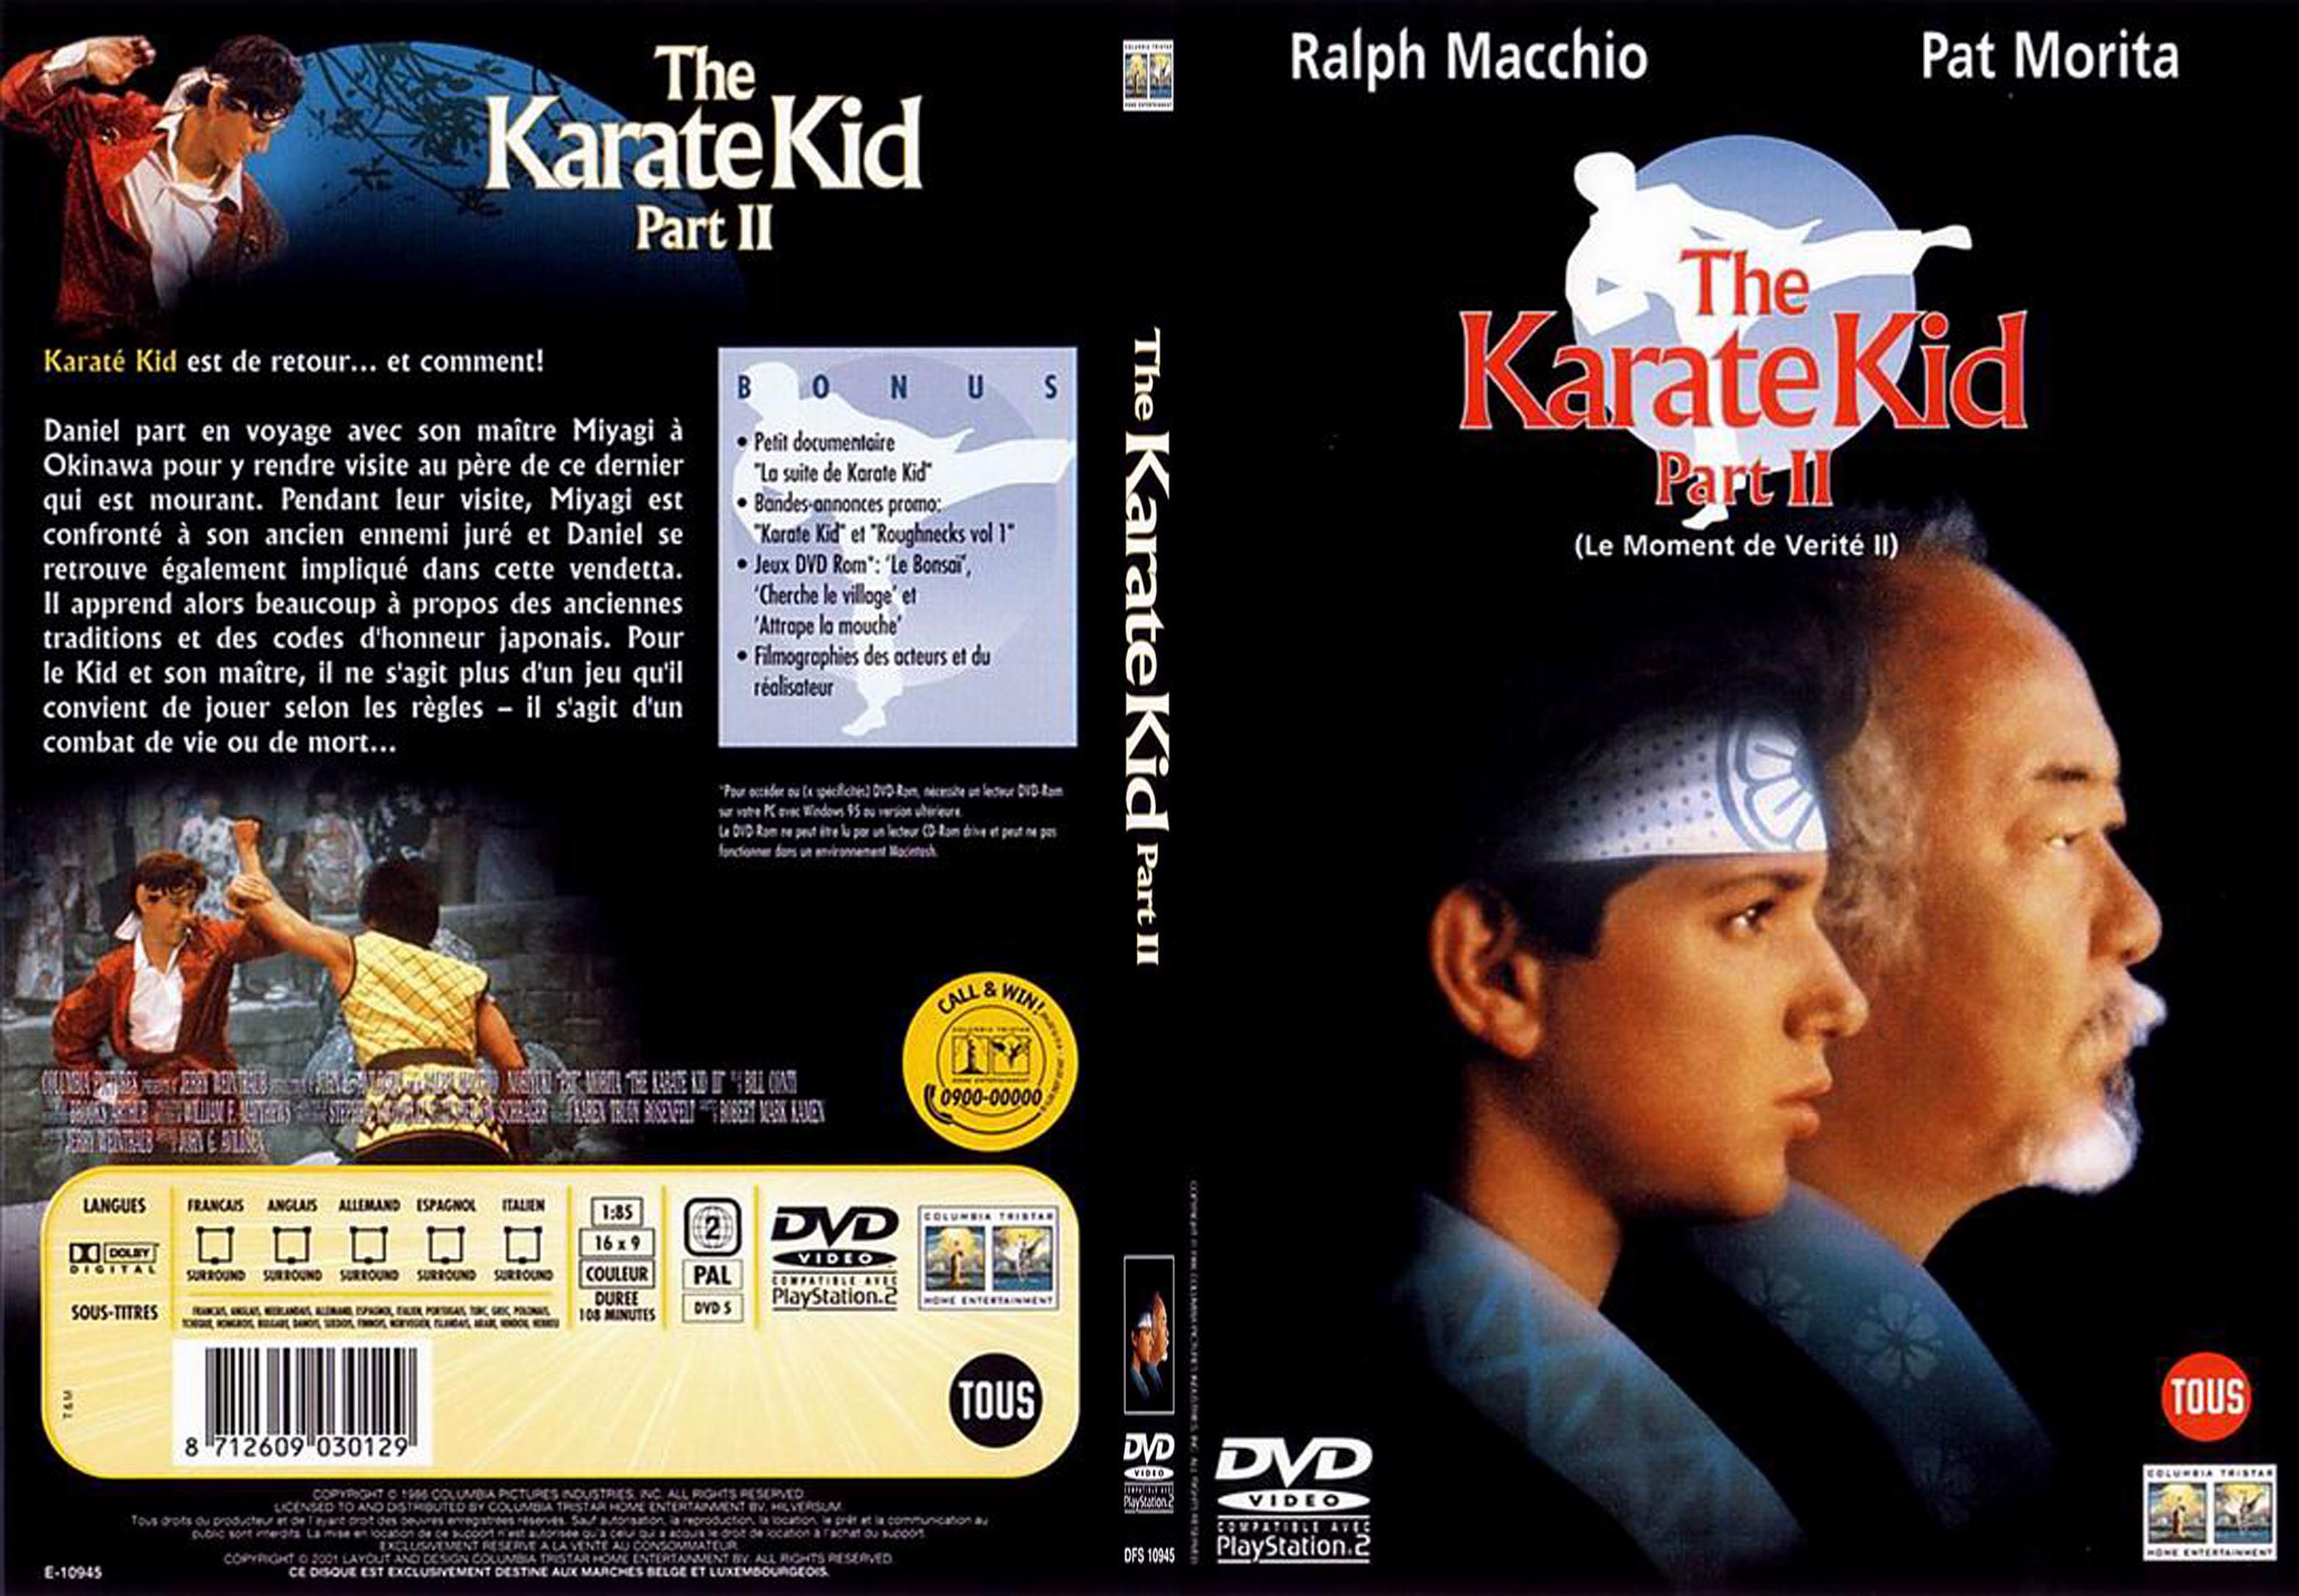 Jaquette DVD Karate kid 2 - SLIM